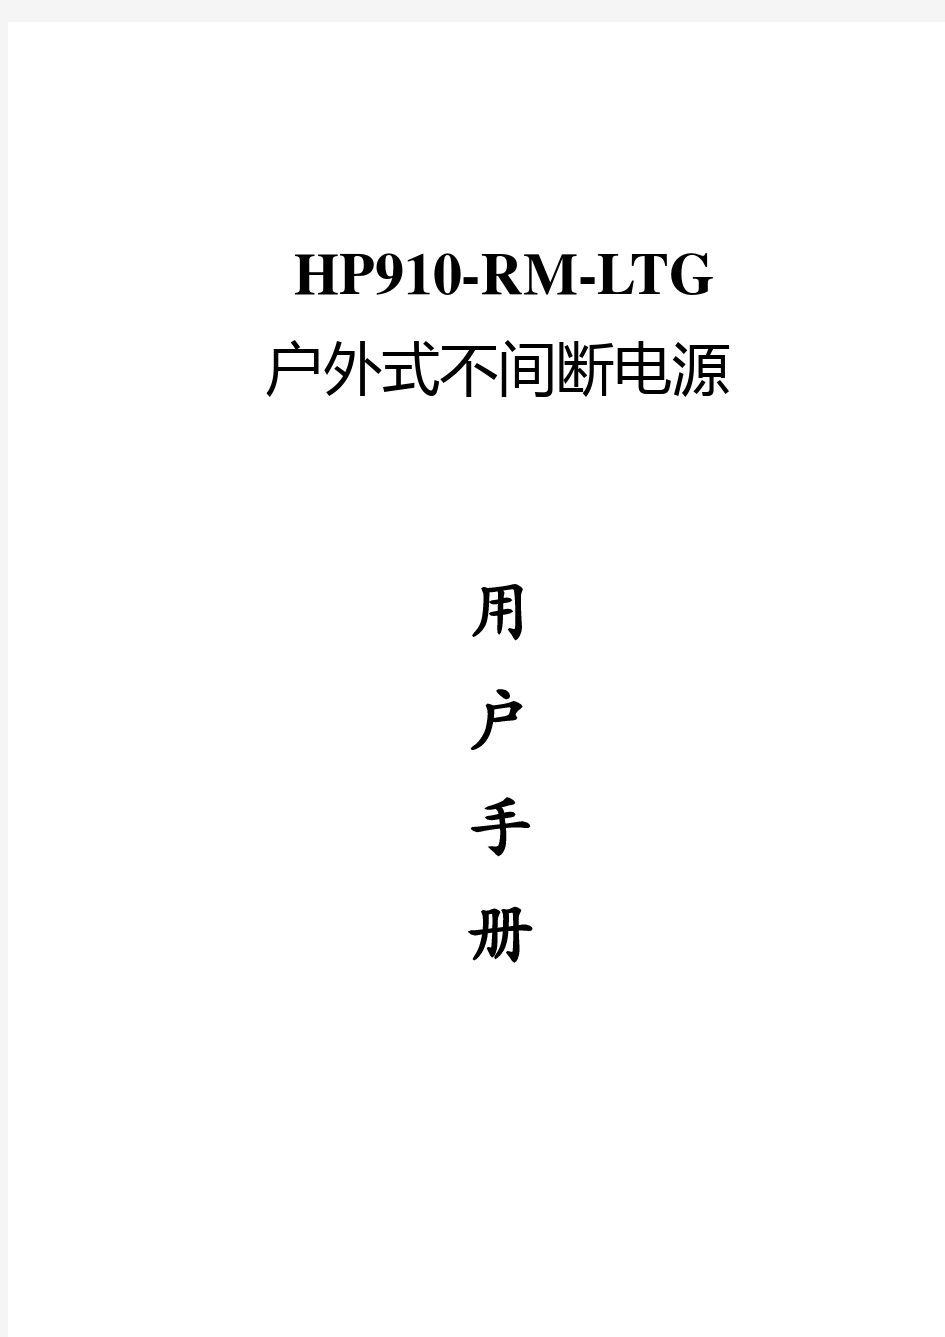 HP910-RM-LTG使用手册